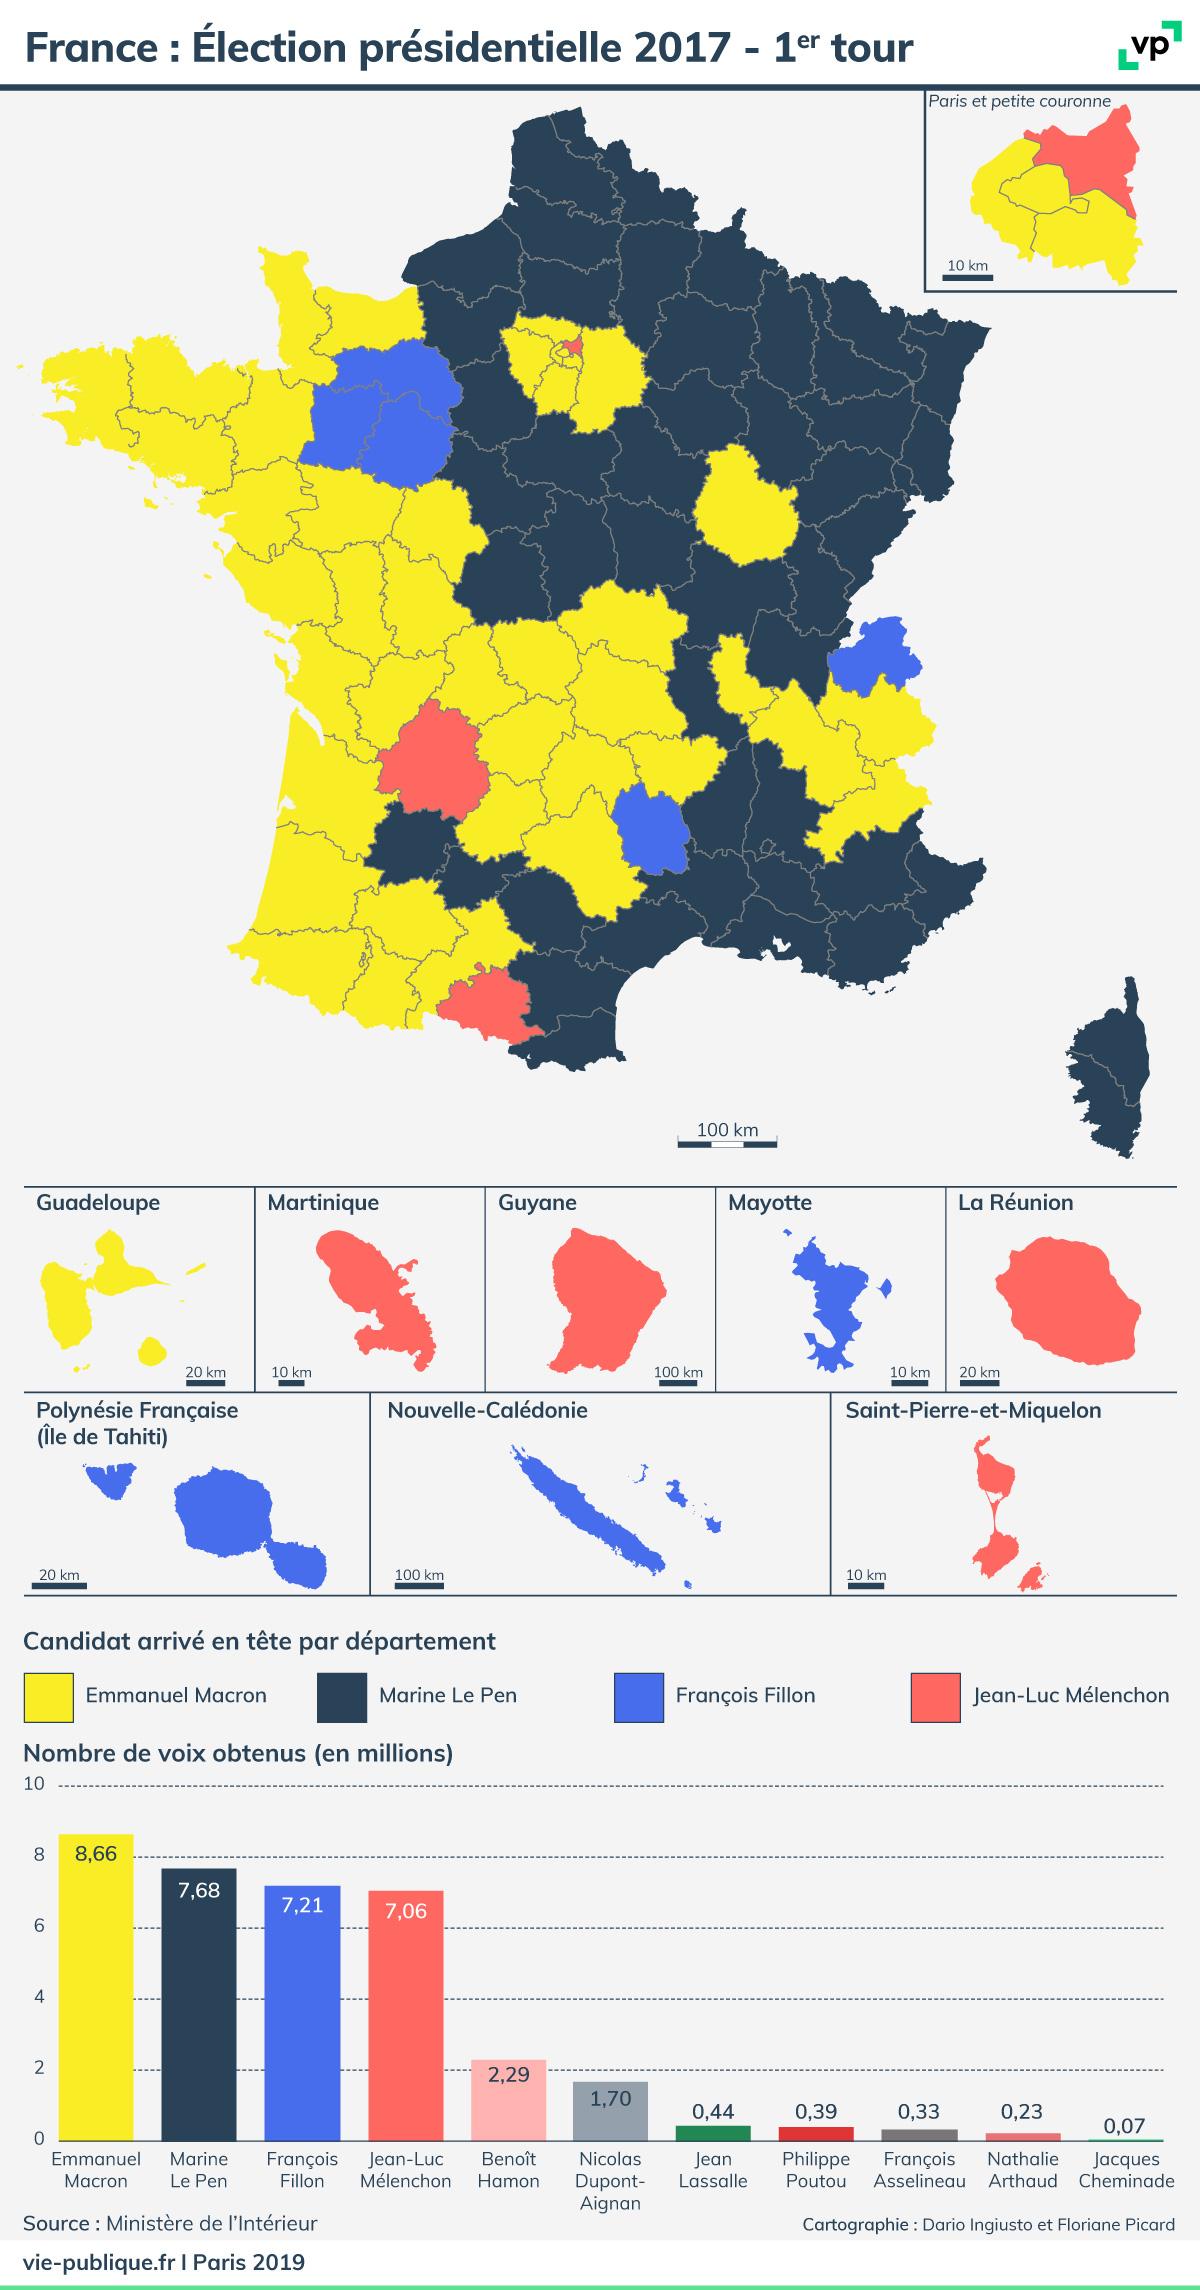 Carte de France : Élection présidentielle 2017 - premier tour. Description de la carte ci-dessous 